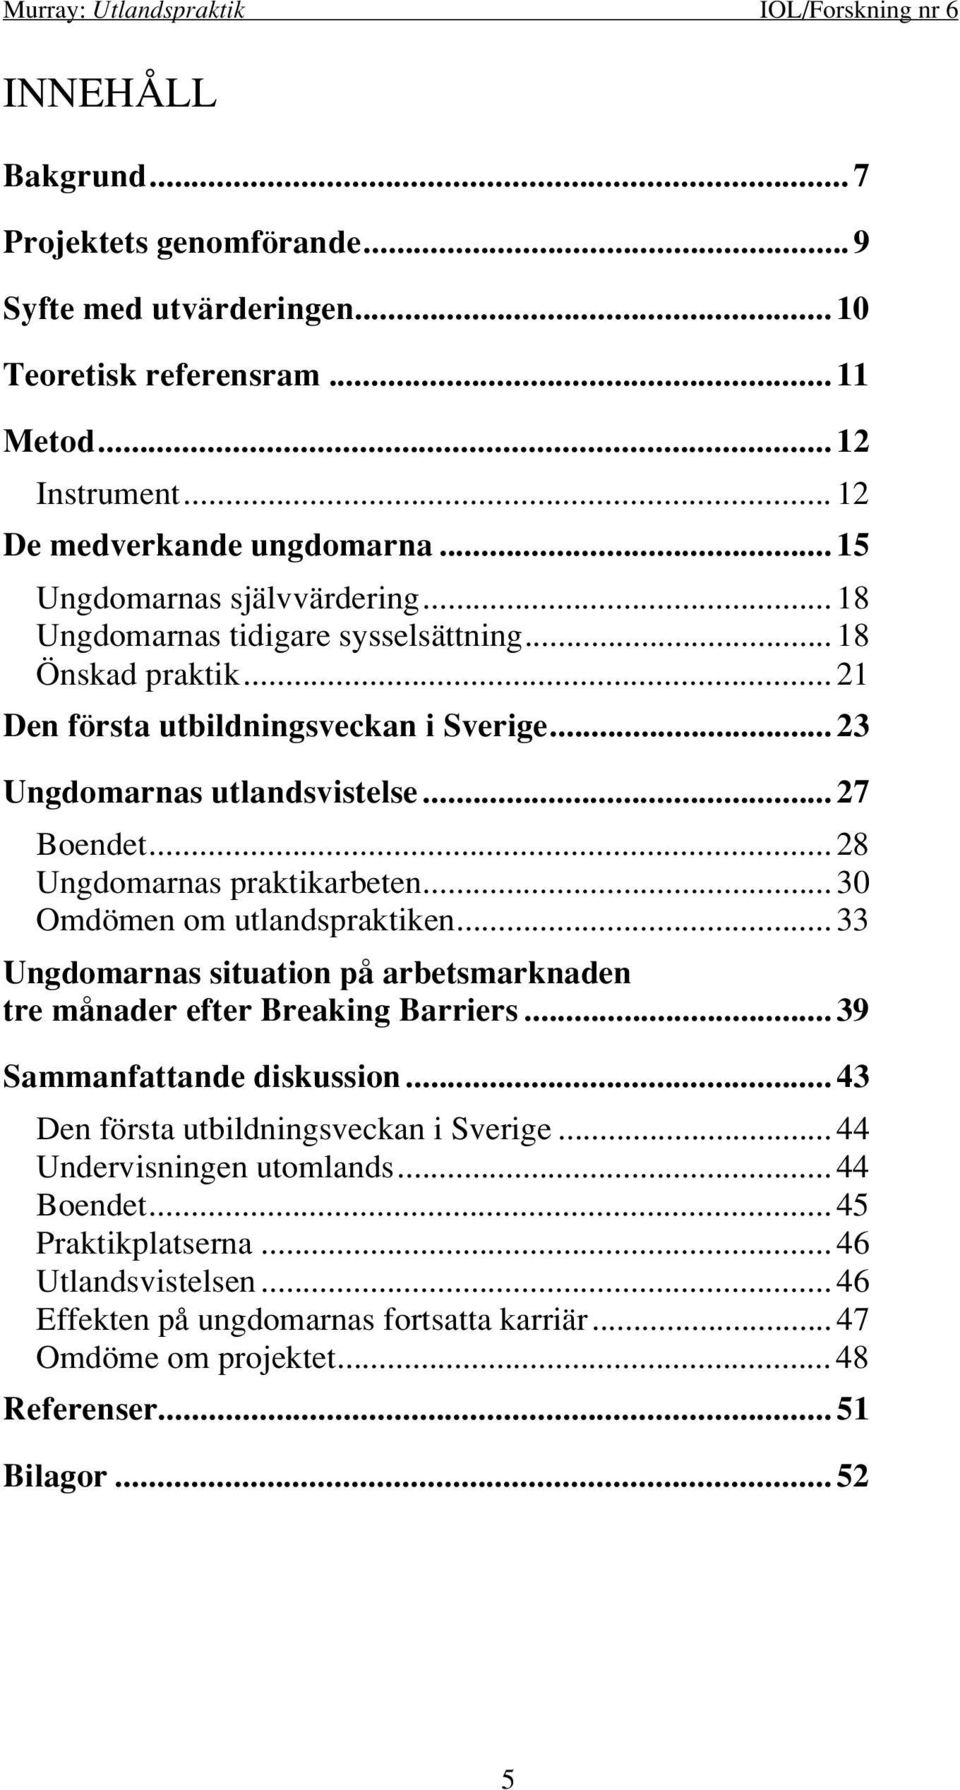 .. 30 Omdömen om utlandspraktiken... 33 Ungdomarnas situation på arbetsmarknaden tre månader efter Breaking Barriers... 39 Sammanfattande diskussion... 43 Den första utbildningsveckan i Sverige.